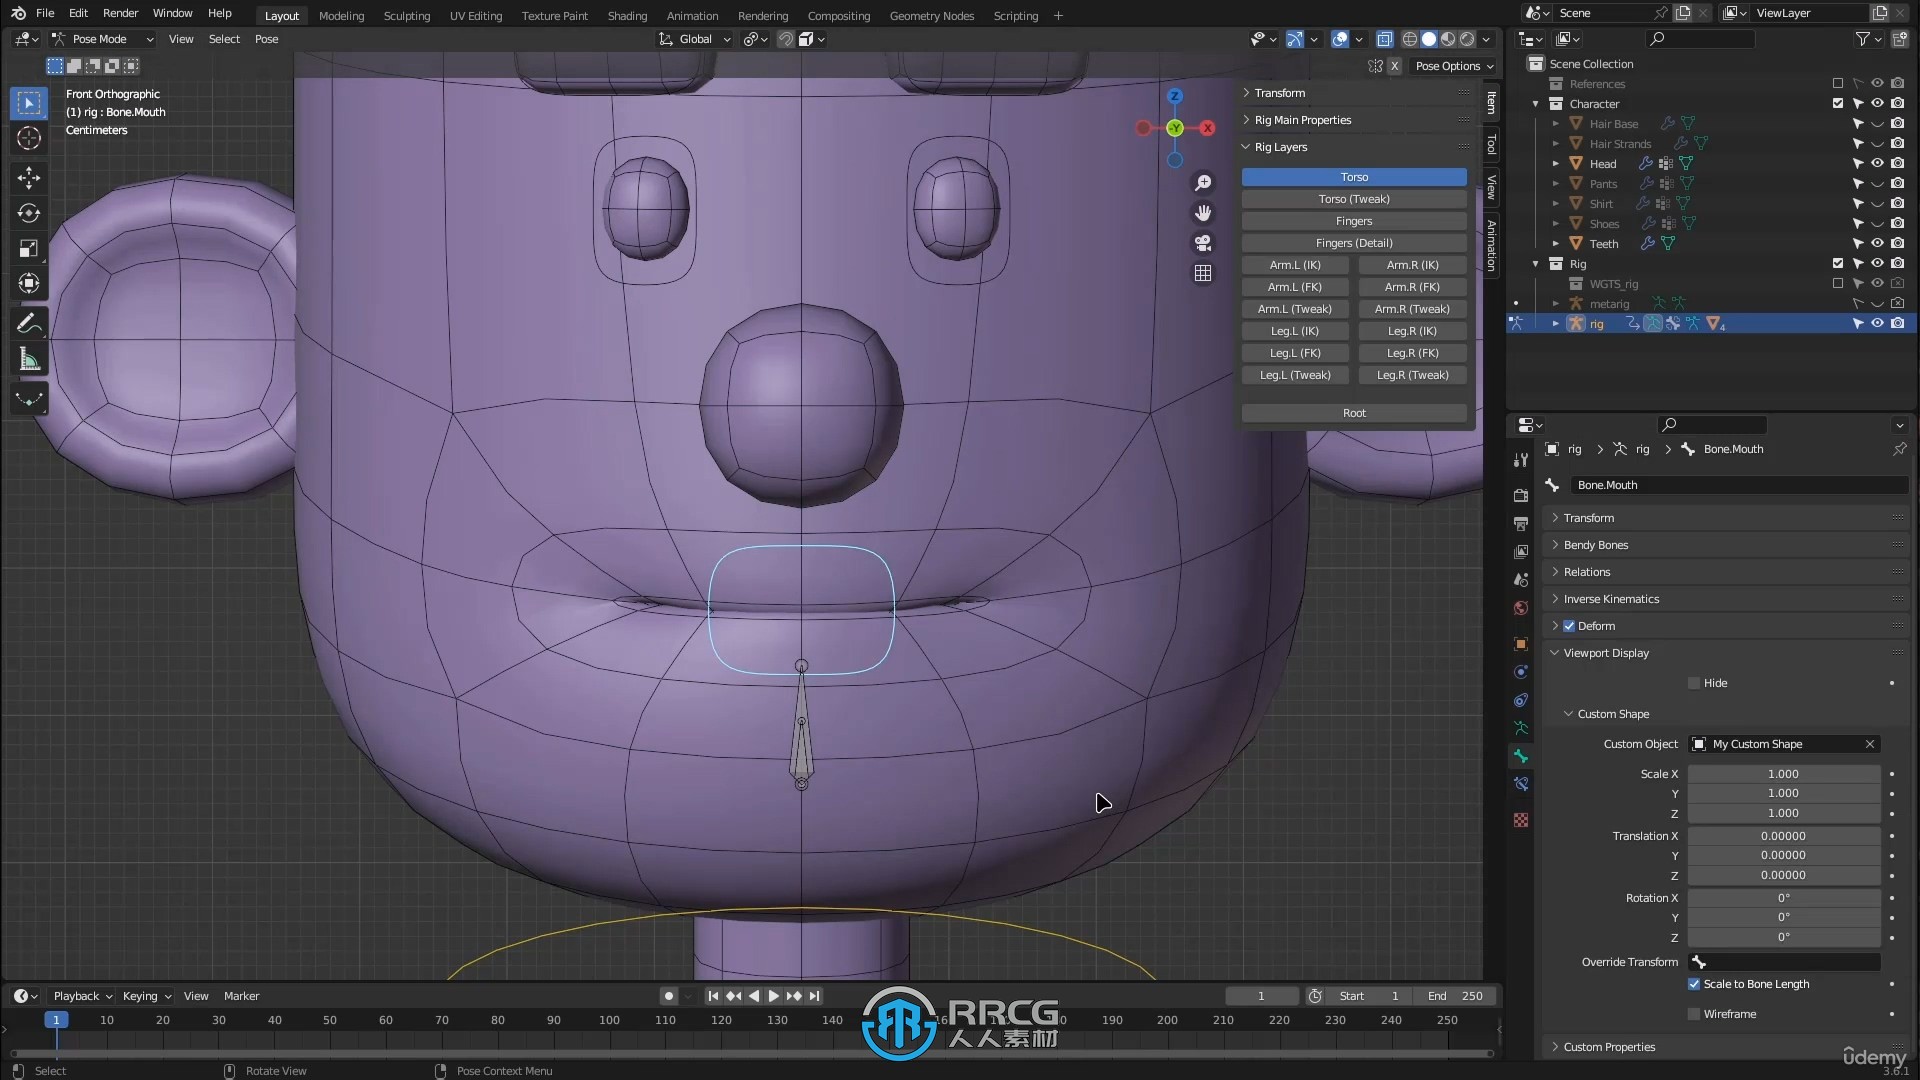 Blender三维人物角色建模与动画制作视频教程